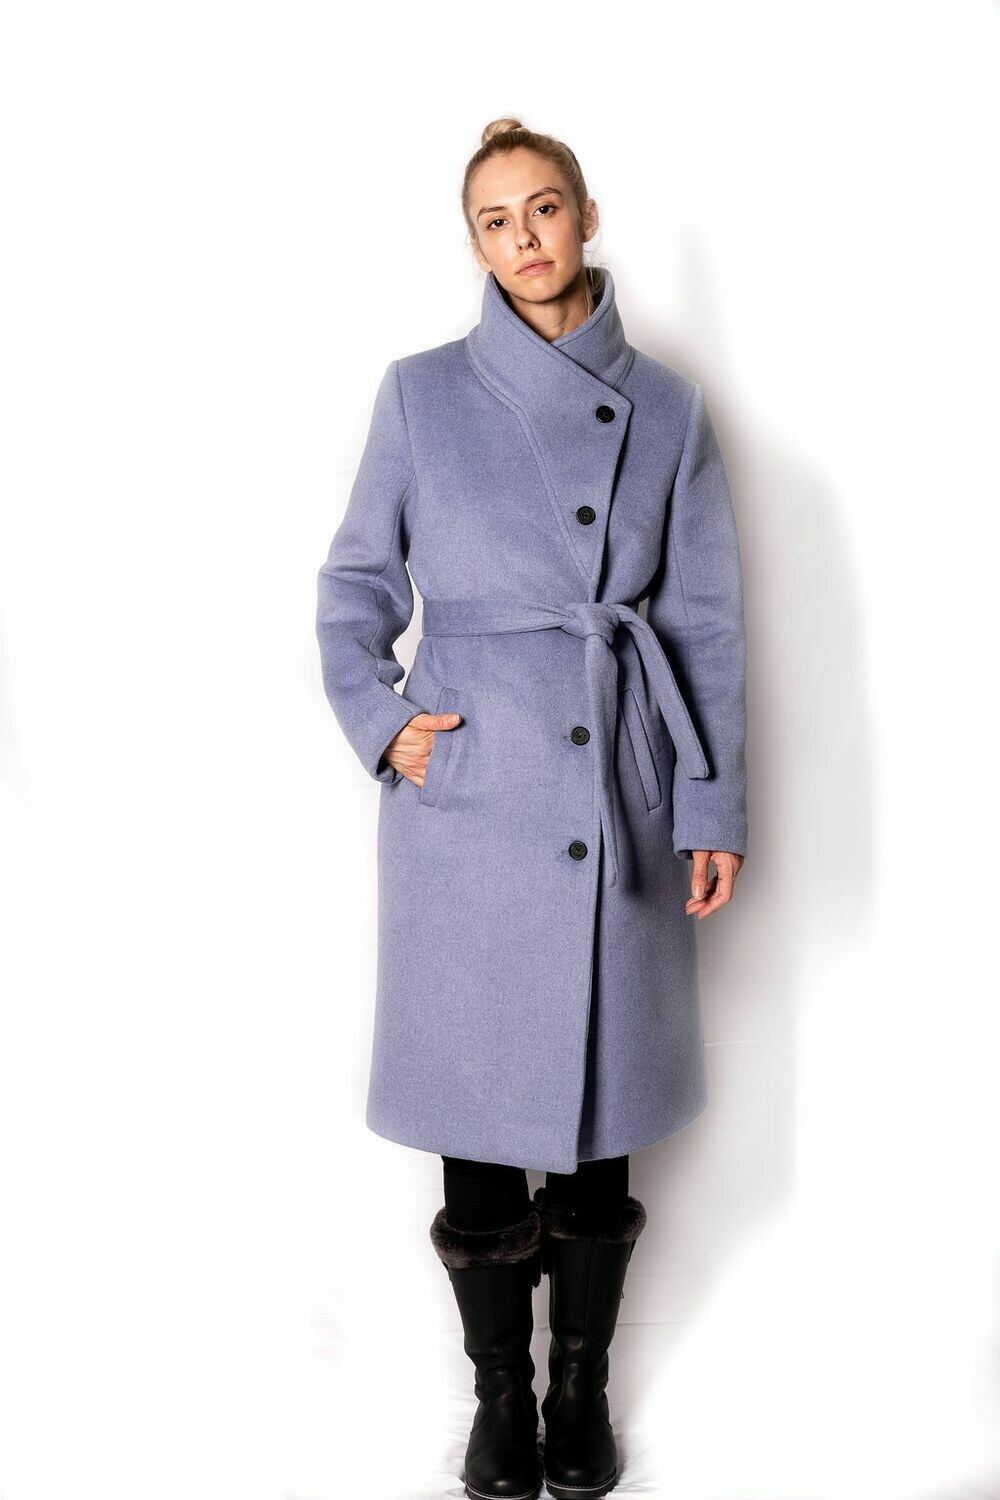 Manteau femme long avec ceinture - Bleu nordique